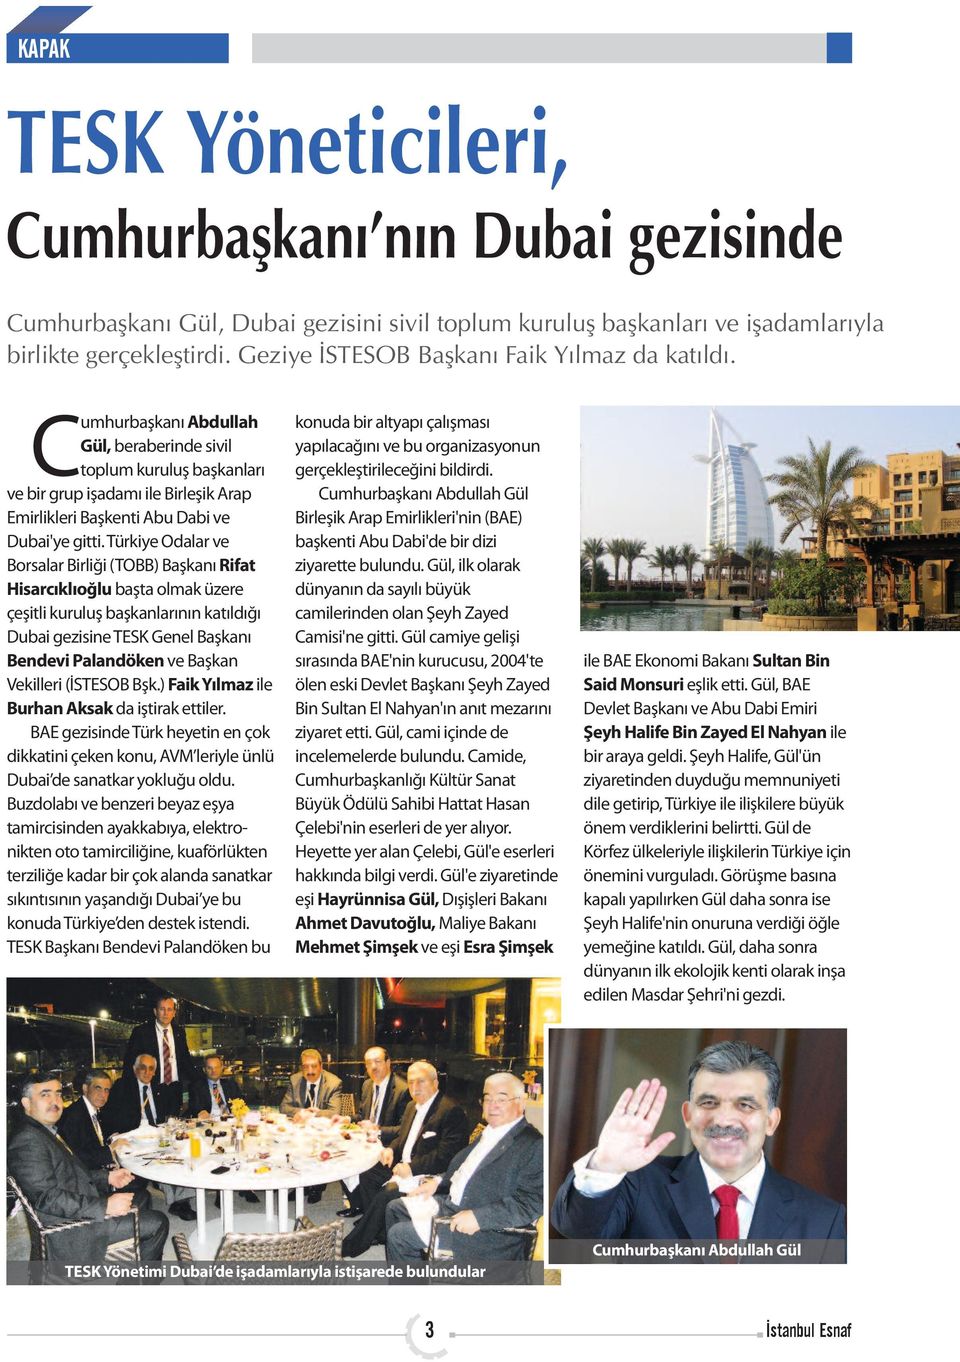 Cumhurbaşkanı Abdullah Gül, beraberinde sivil toplum kuruluş başkanları ve bir grup işadamı ile Birleşik Arap Emirlikleri Başkenti Abu Dabi ve Dubai'ye gitti.